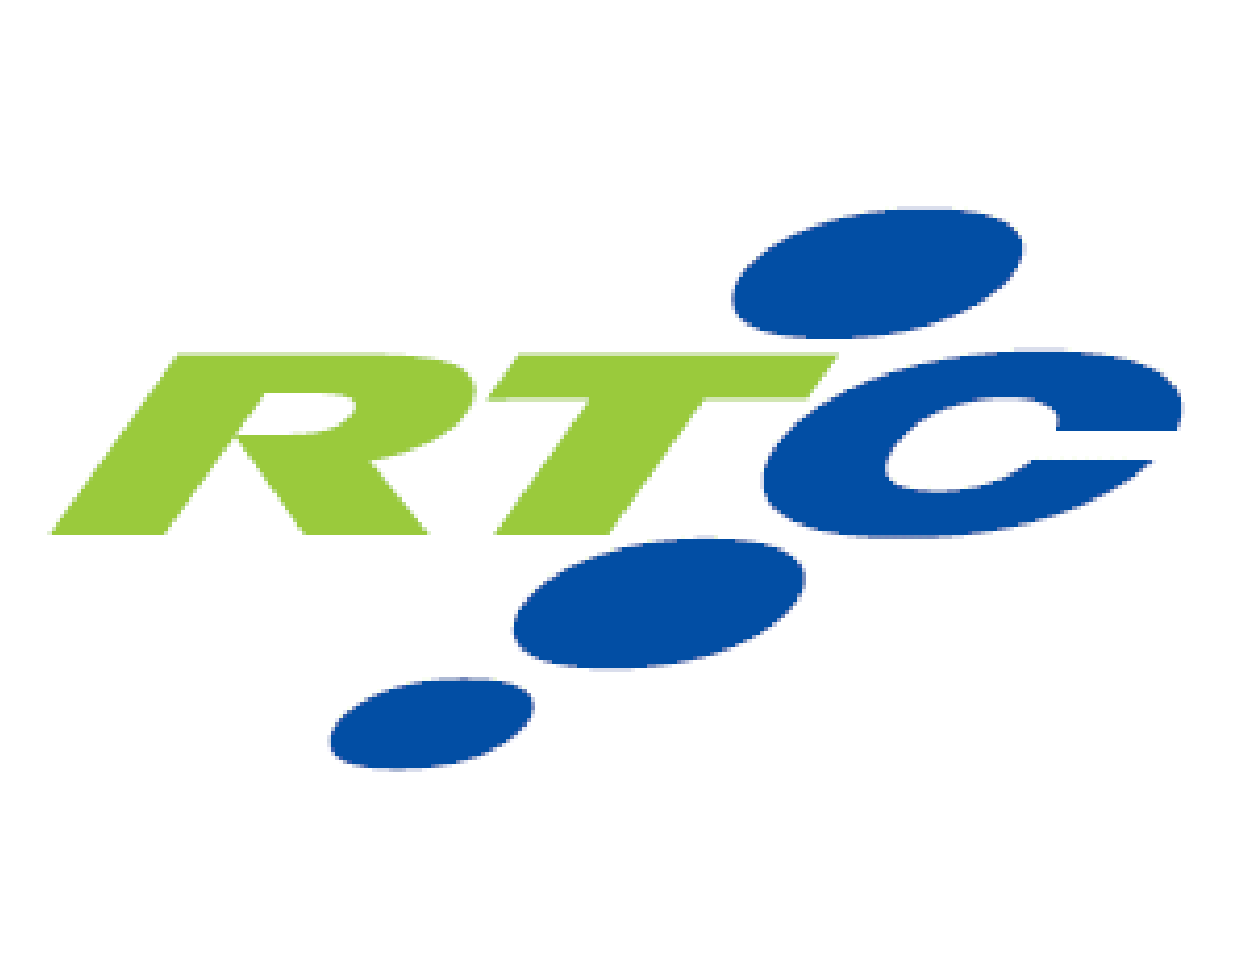 rtc-logo-01-01.png